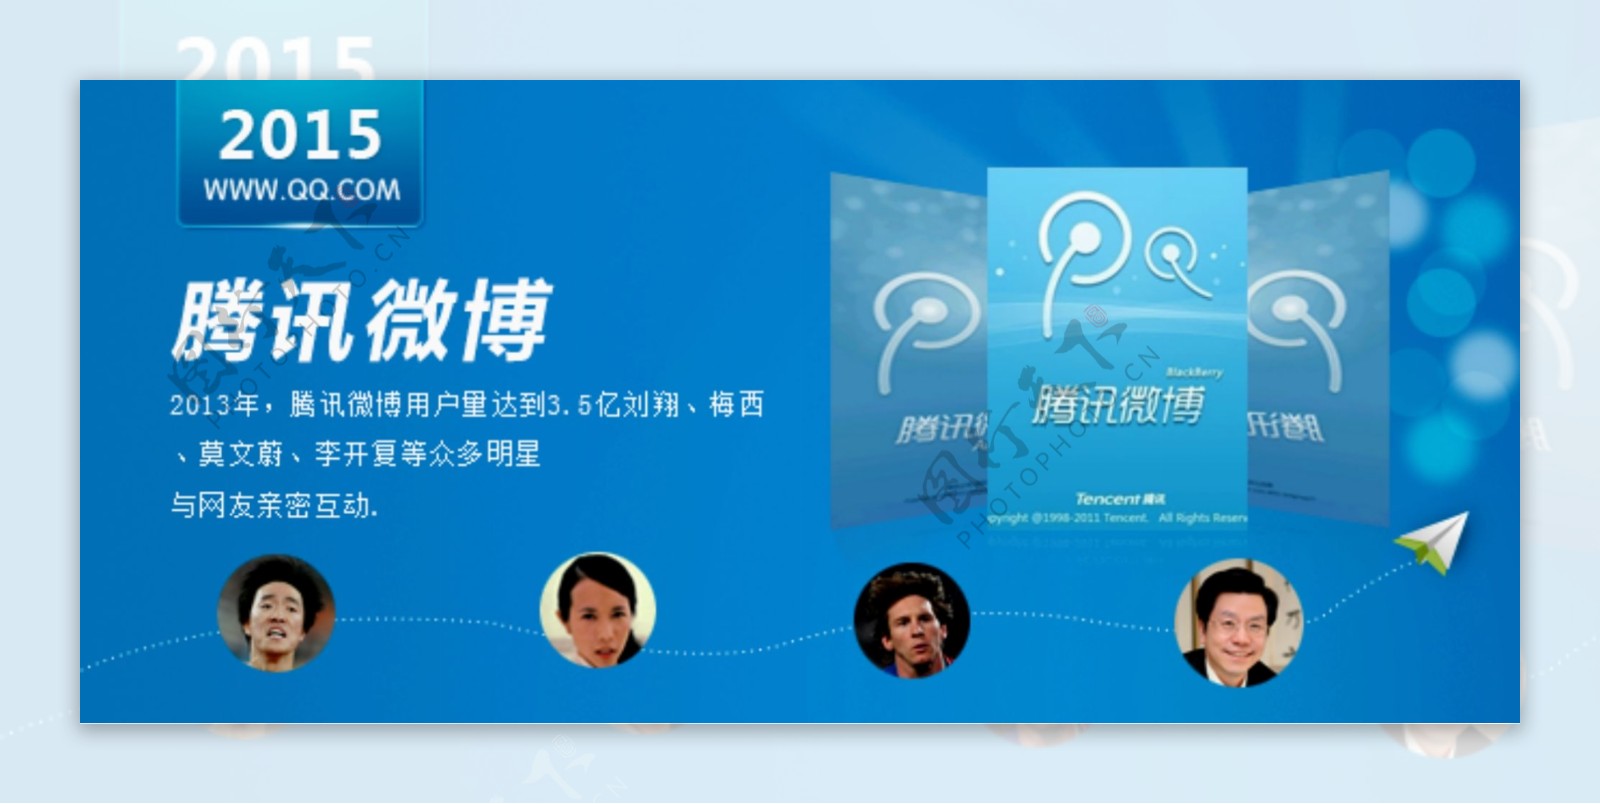 一张关于腾讯微博的banner